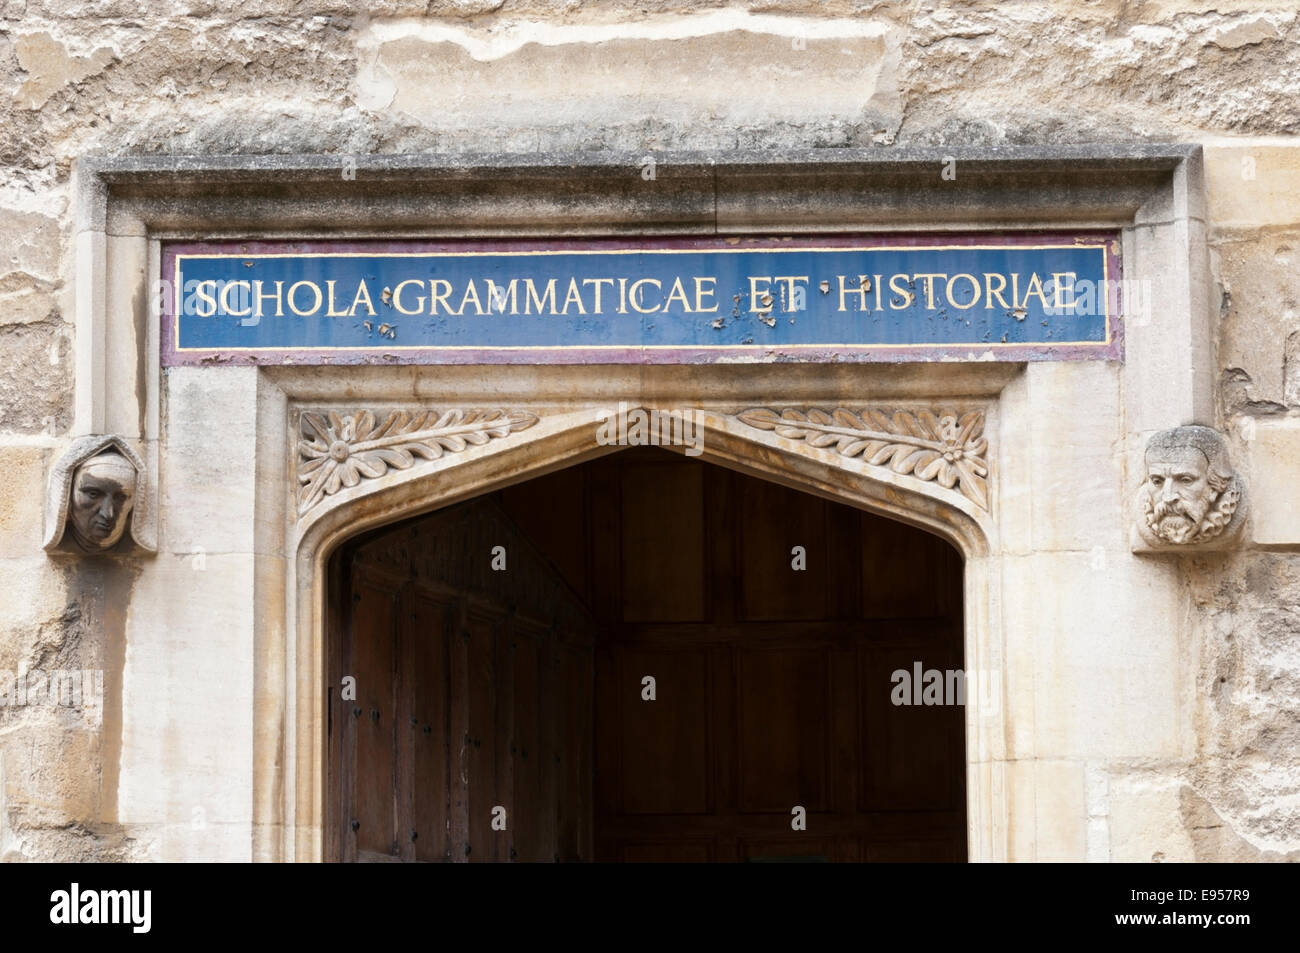 Cette porte de l'ancien quadrilatère Bodleian était à l'origine de l'École de la grammaire et de l'histoire. Maintenant, il conduit à la salle de thé. Banque D'Images